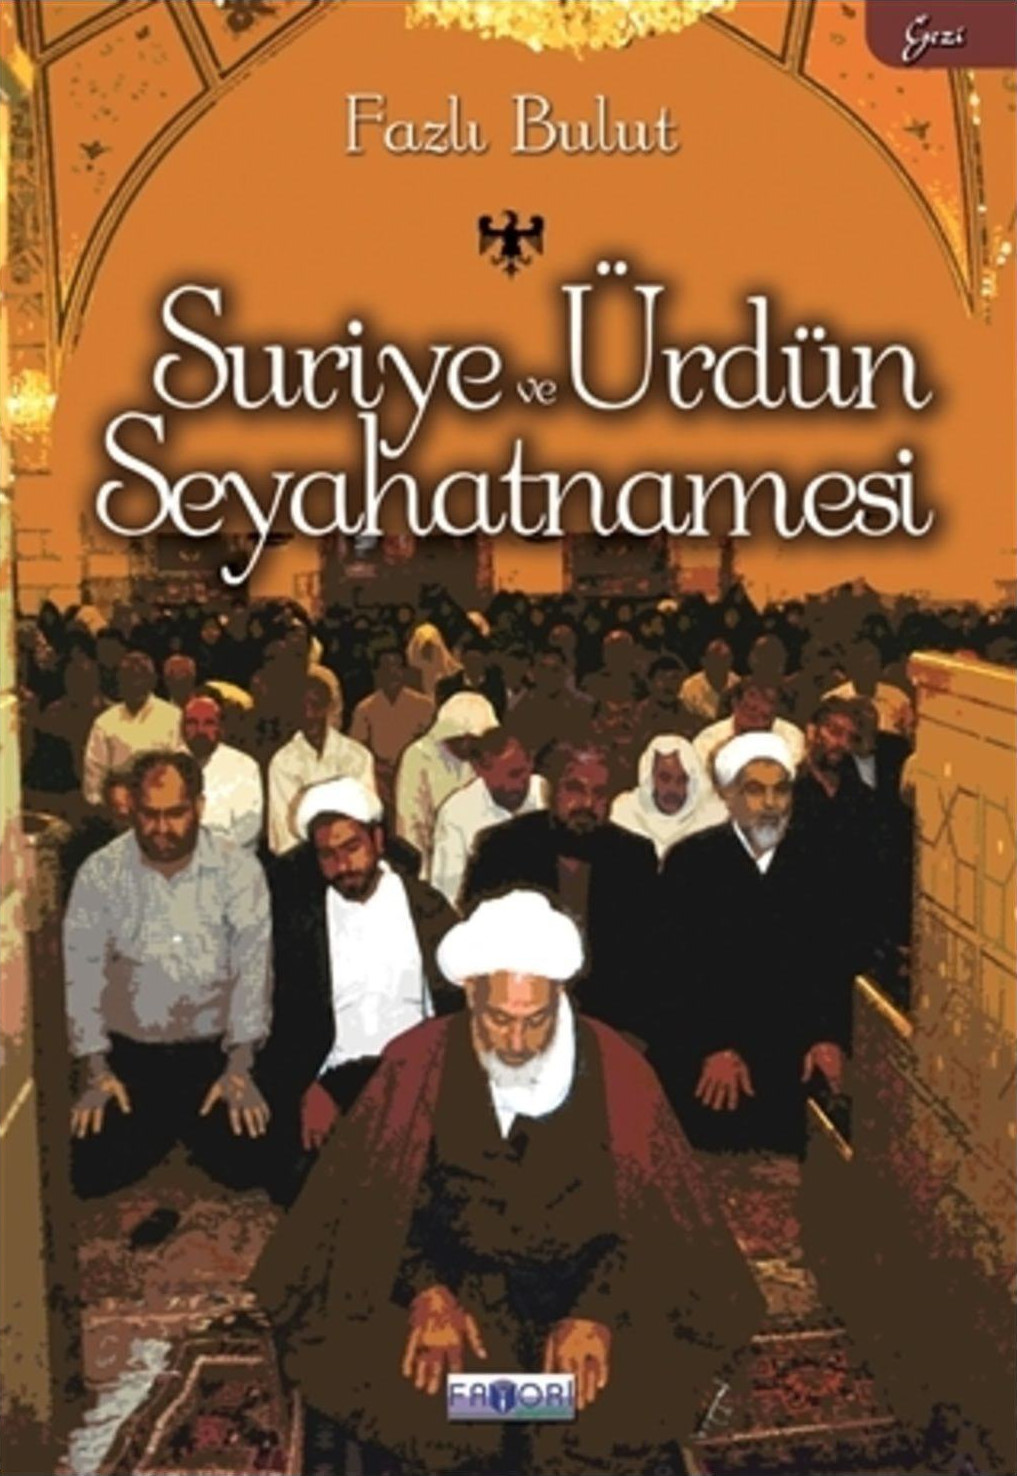 Fazlı Bulut'un 'Suriye ve Ürdün Seyahatnamesi' kitabı.